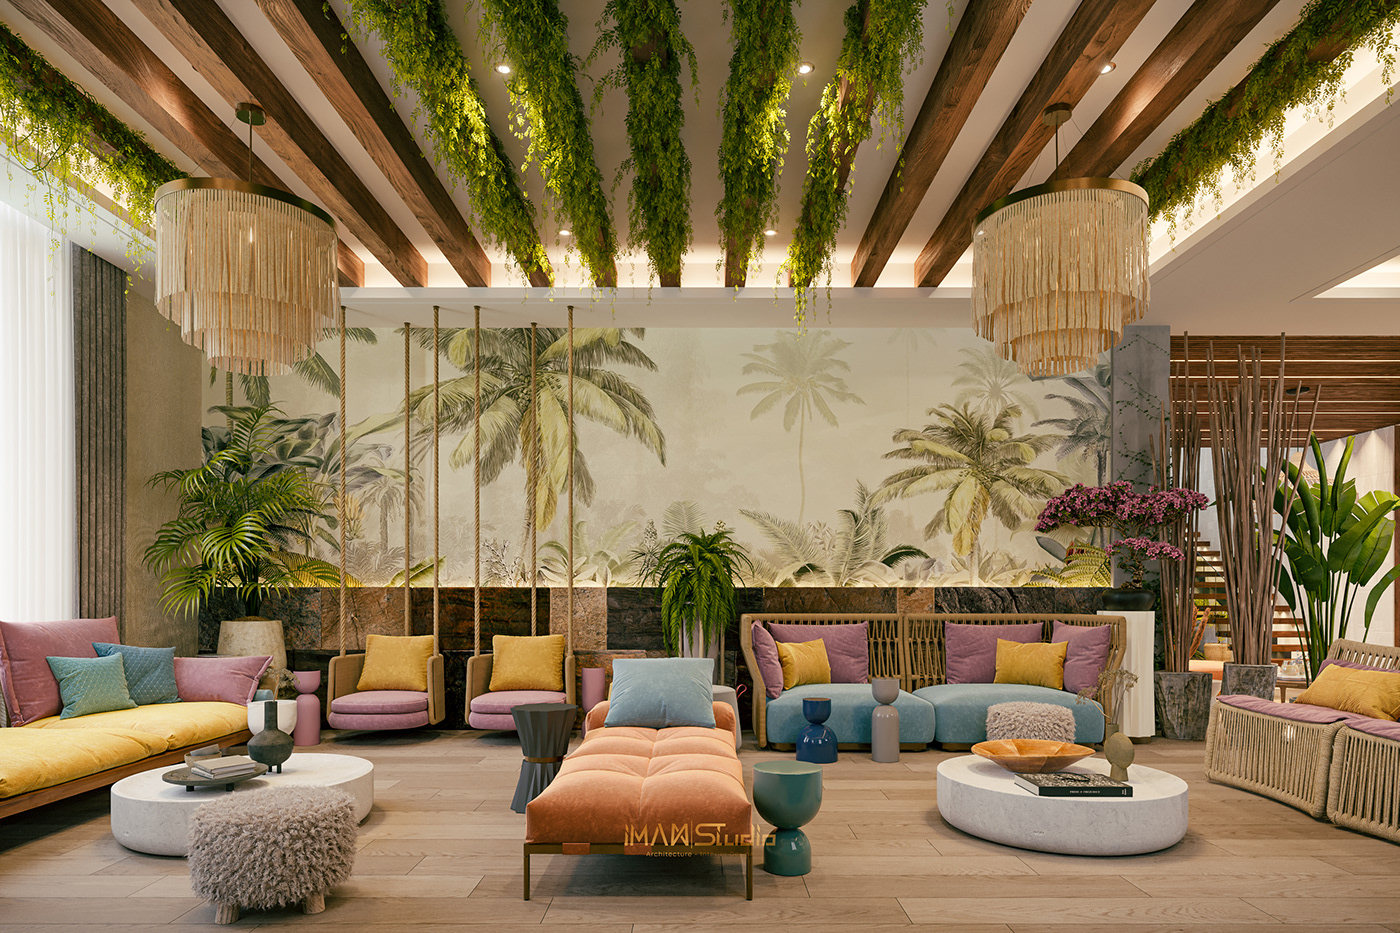 architecture archviz garden interior design  Into the nature Spa Tropical visualization